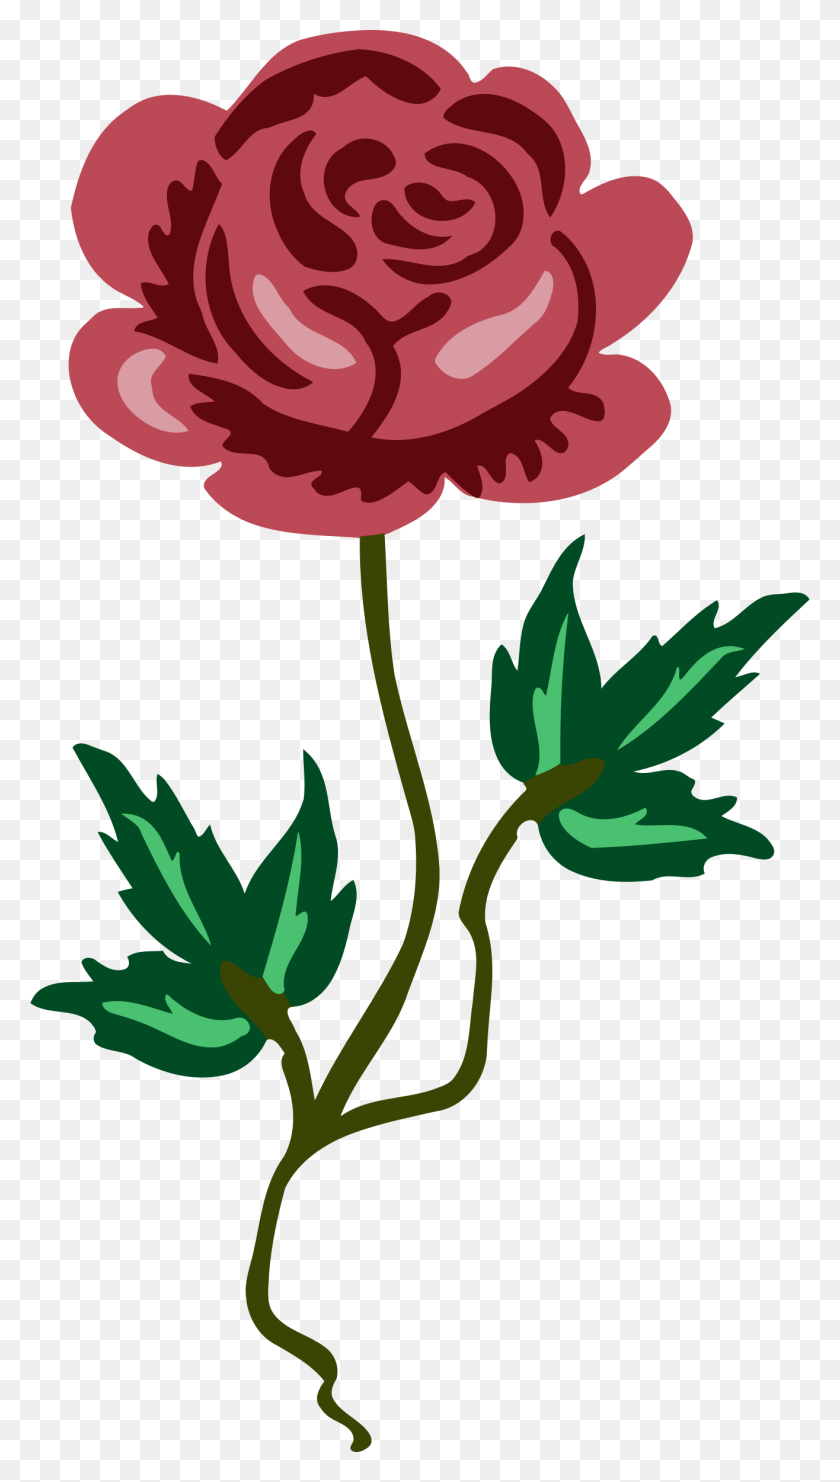 1316x2400 Descargar Png / Diseño De Iconos Gratis De La Rosa 17 Daun Dan Bunga, Planta, Flor, Flor Hd Png